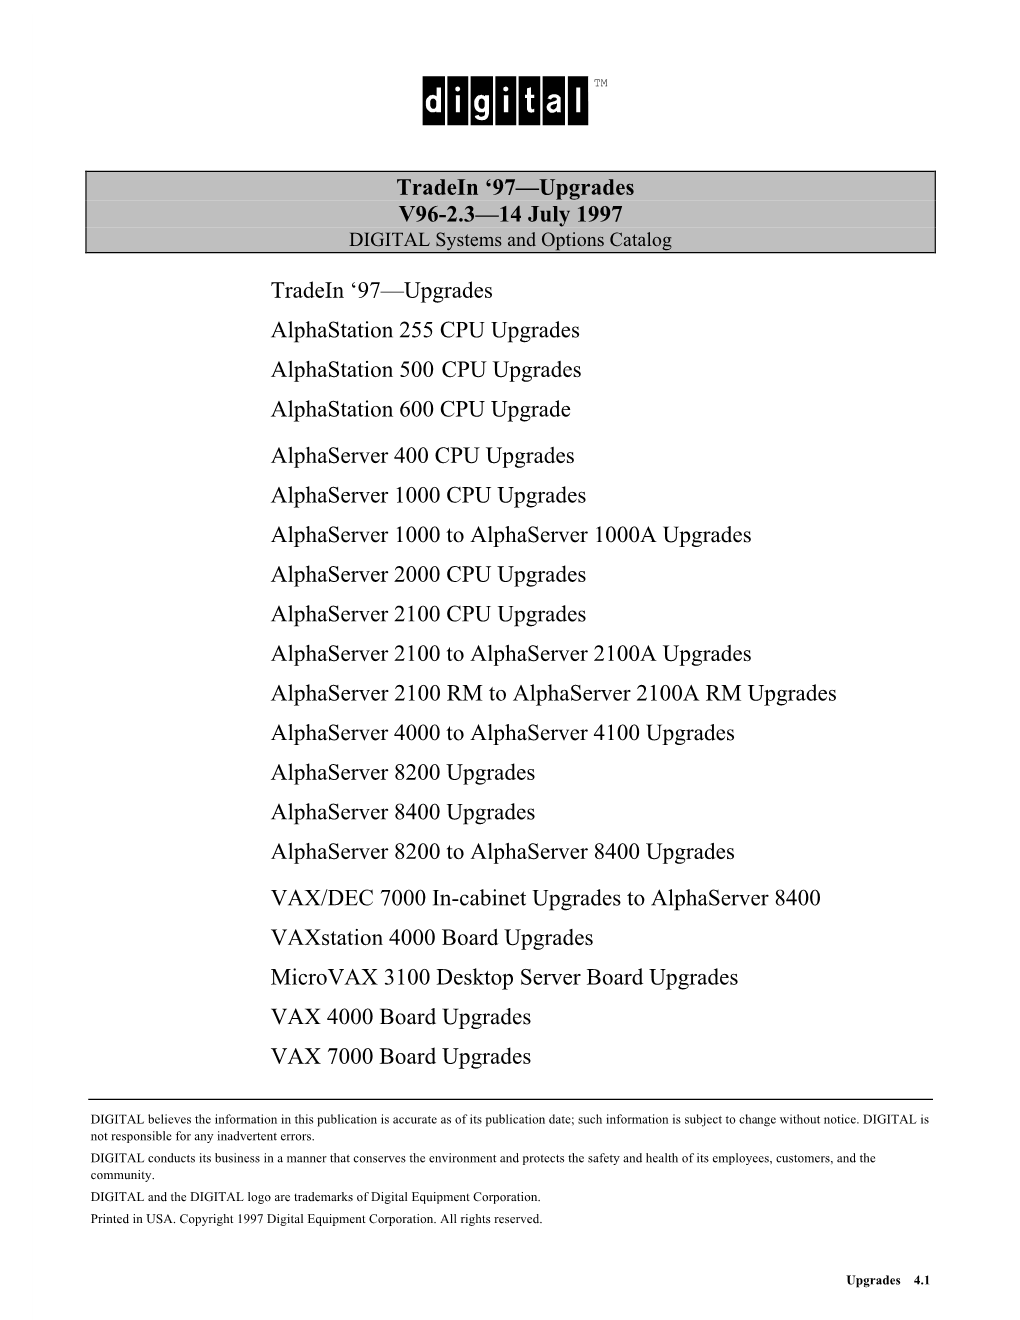 97—Upgrades V96-2.3—14 July 1997 Tradein